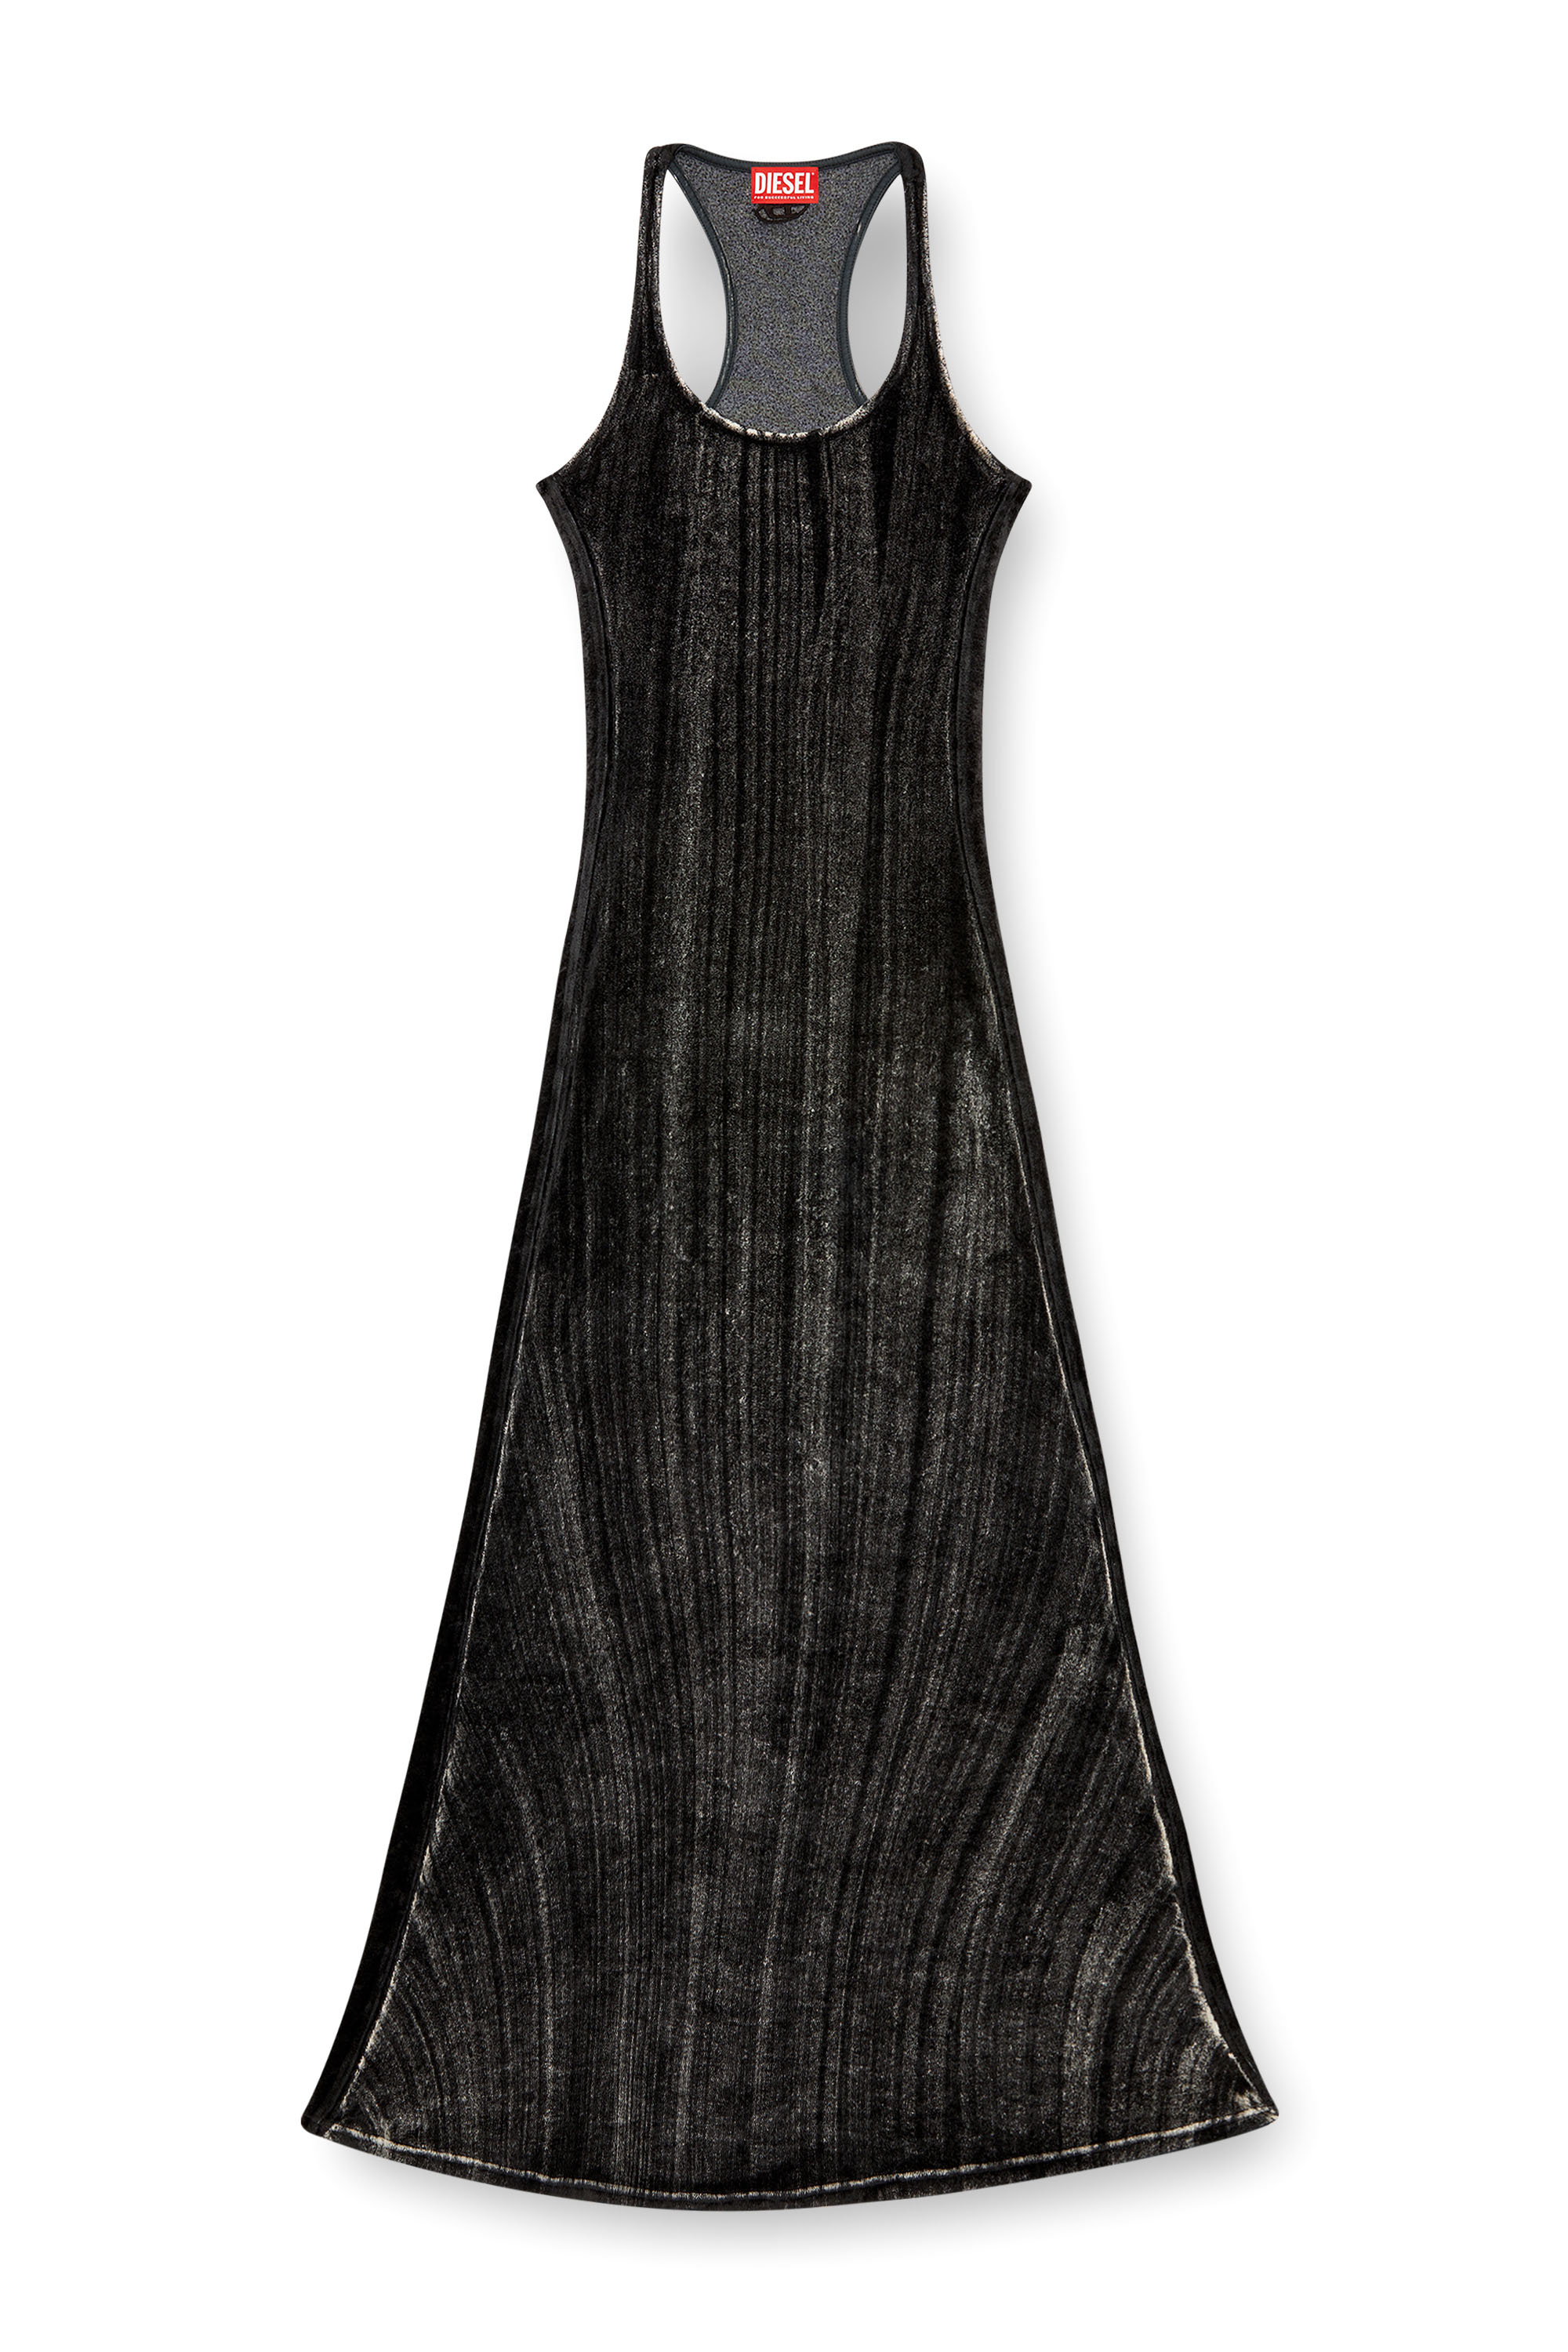 Diesel - D-VOG, Mujer Vestido largo de chenilla con espalda deportiva in Negro - Image 2